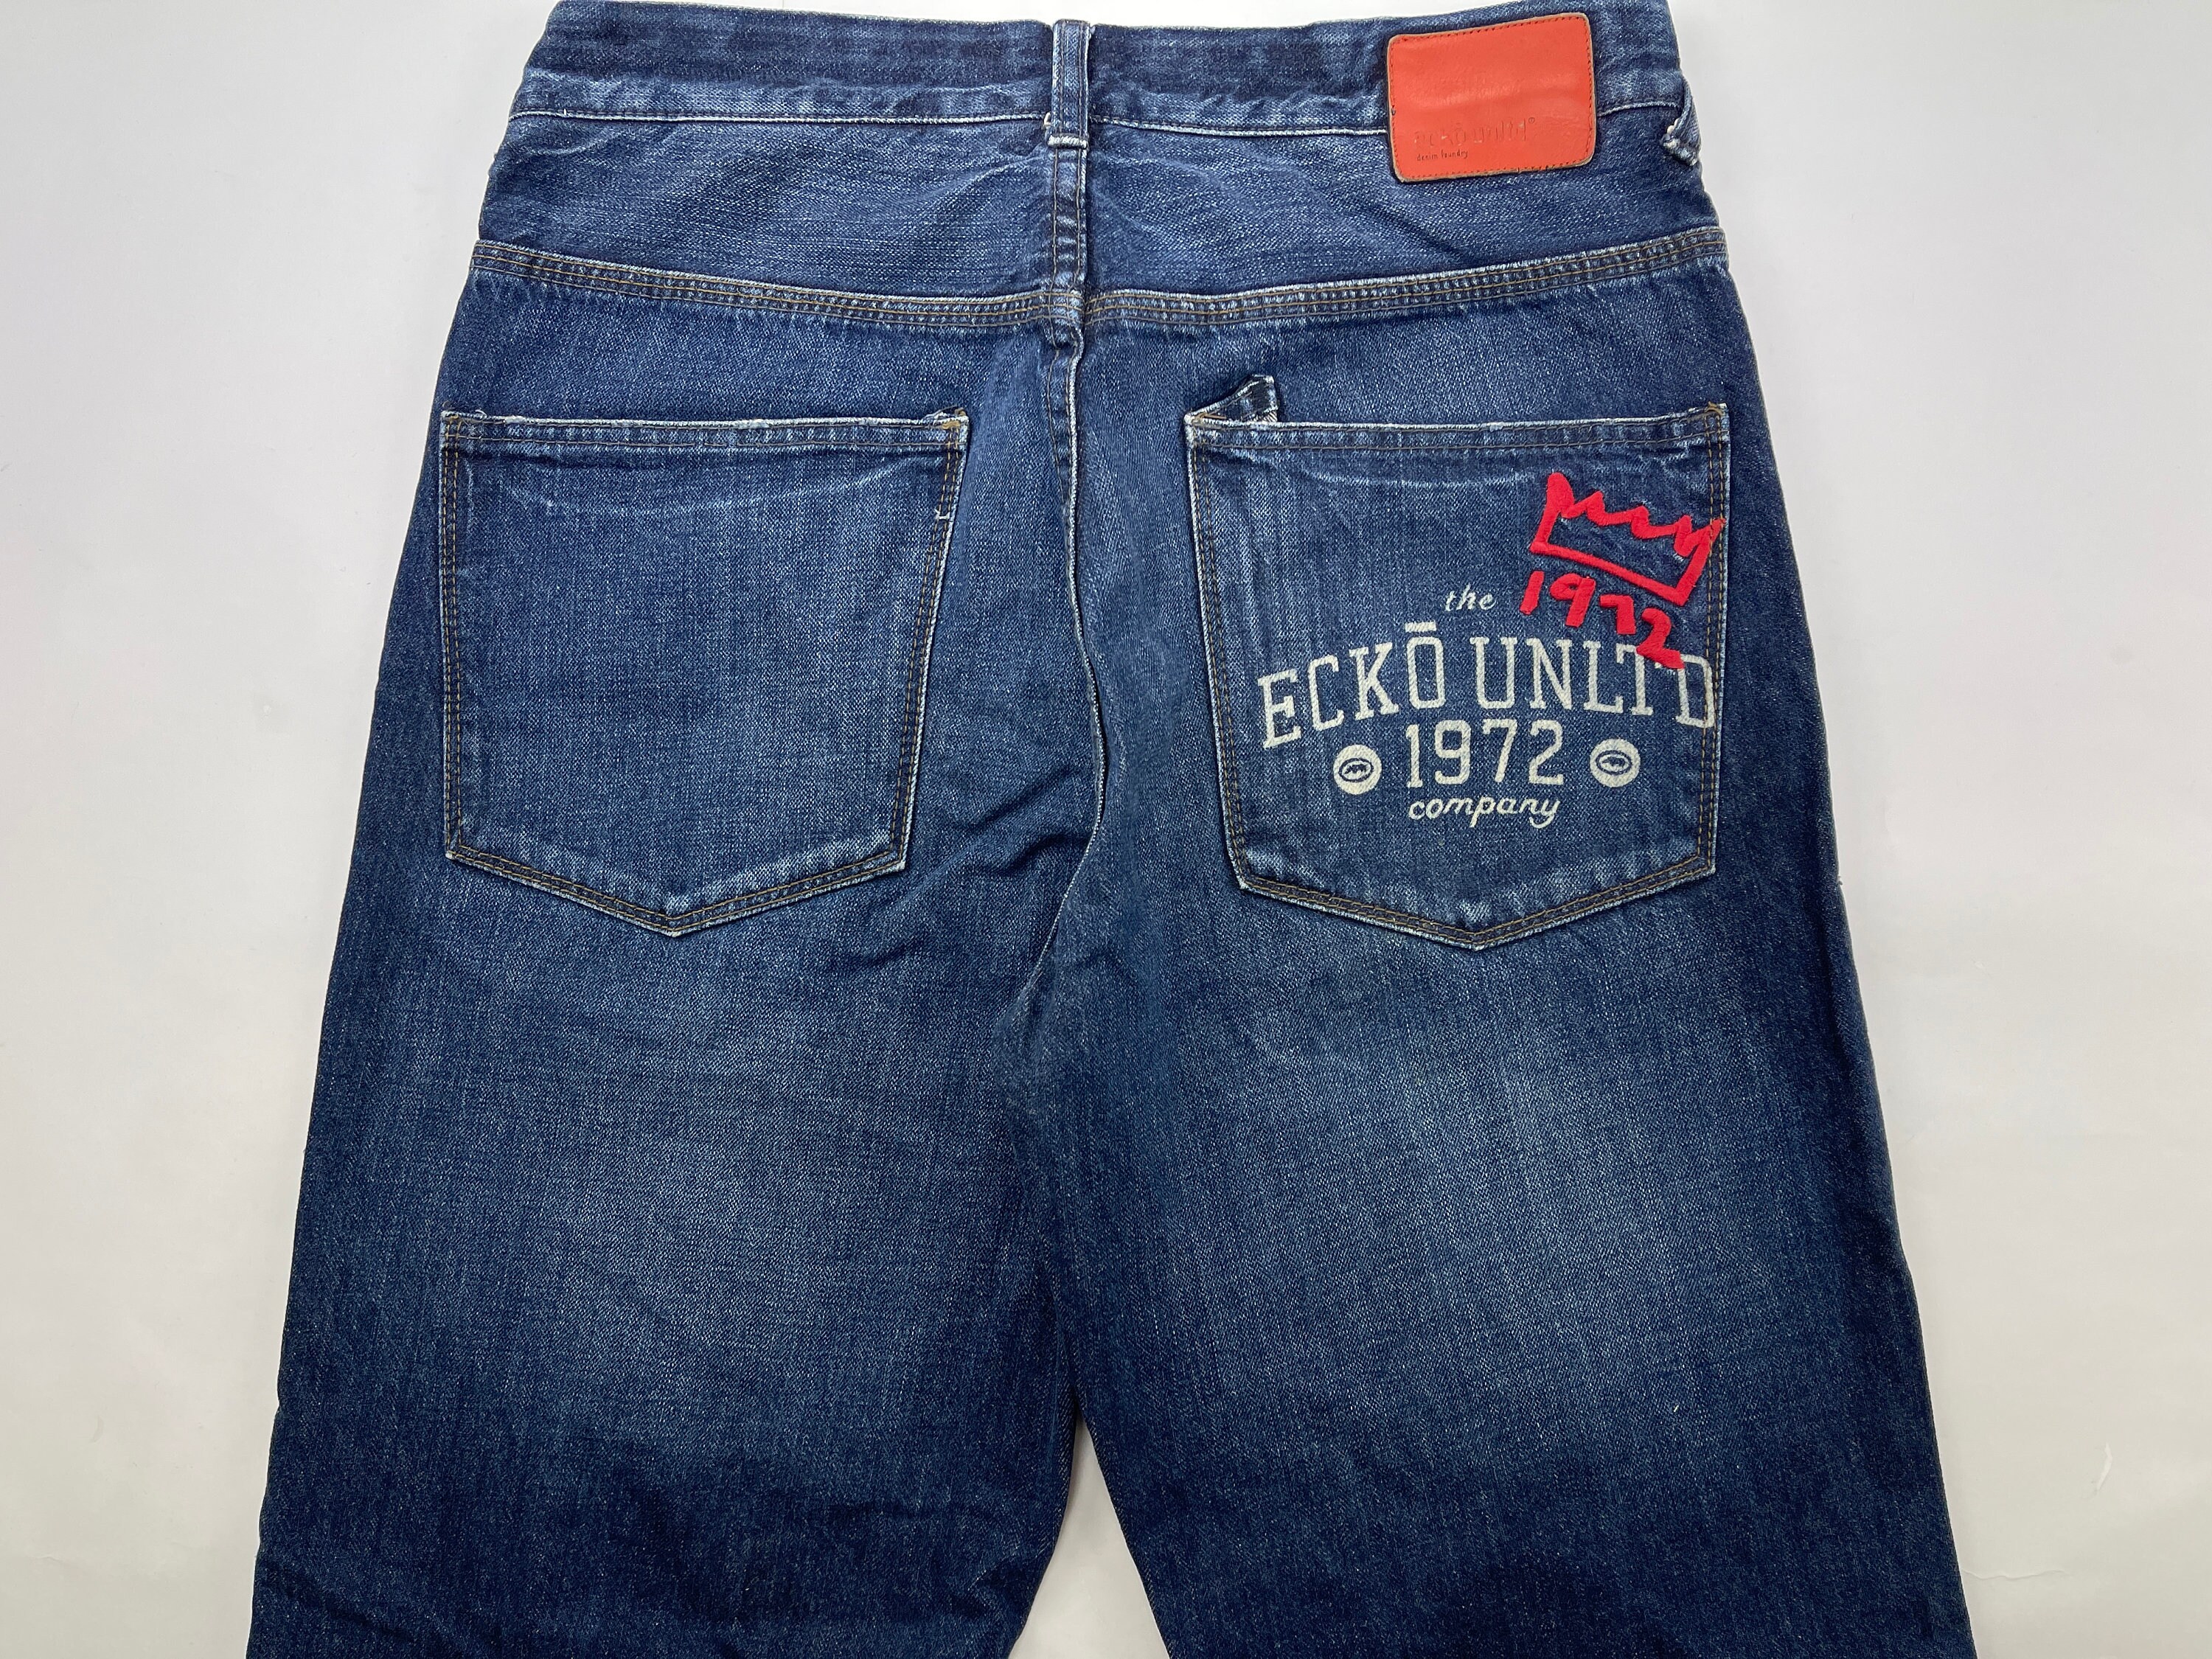 Ecko Unltd Jeans Blue Vintage Baggy Pants 90s Hip Hop - Etsy UK